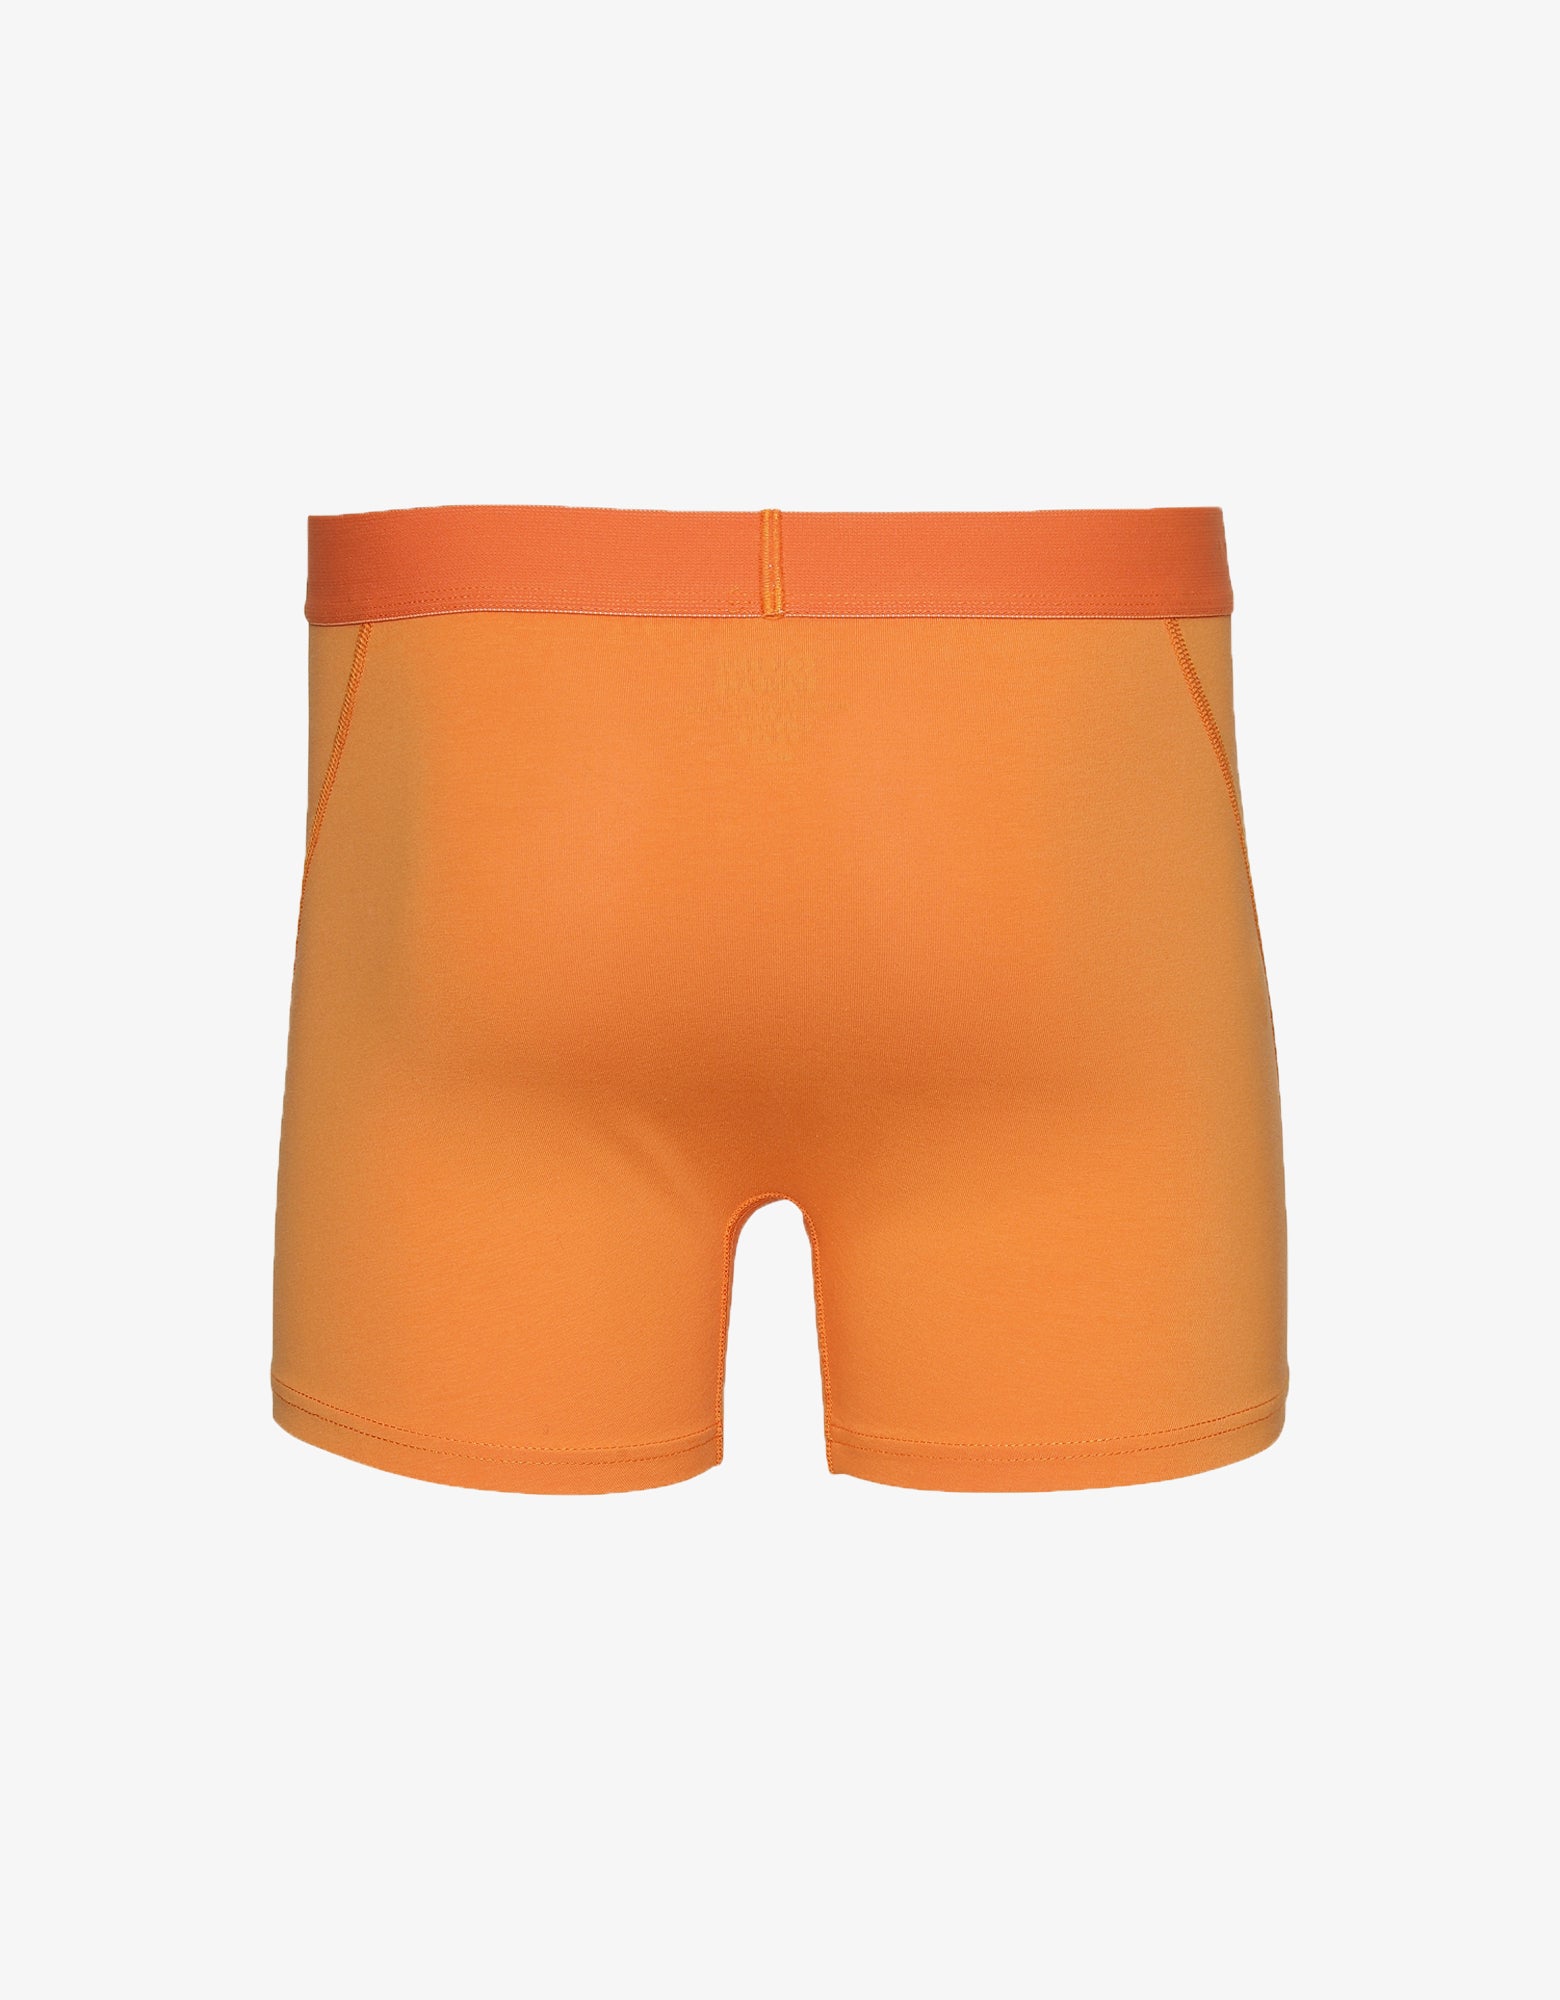 Colorful Standard Classic Organic Boxer Briefs Underwear Sunny Orange